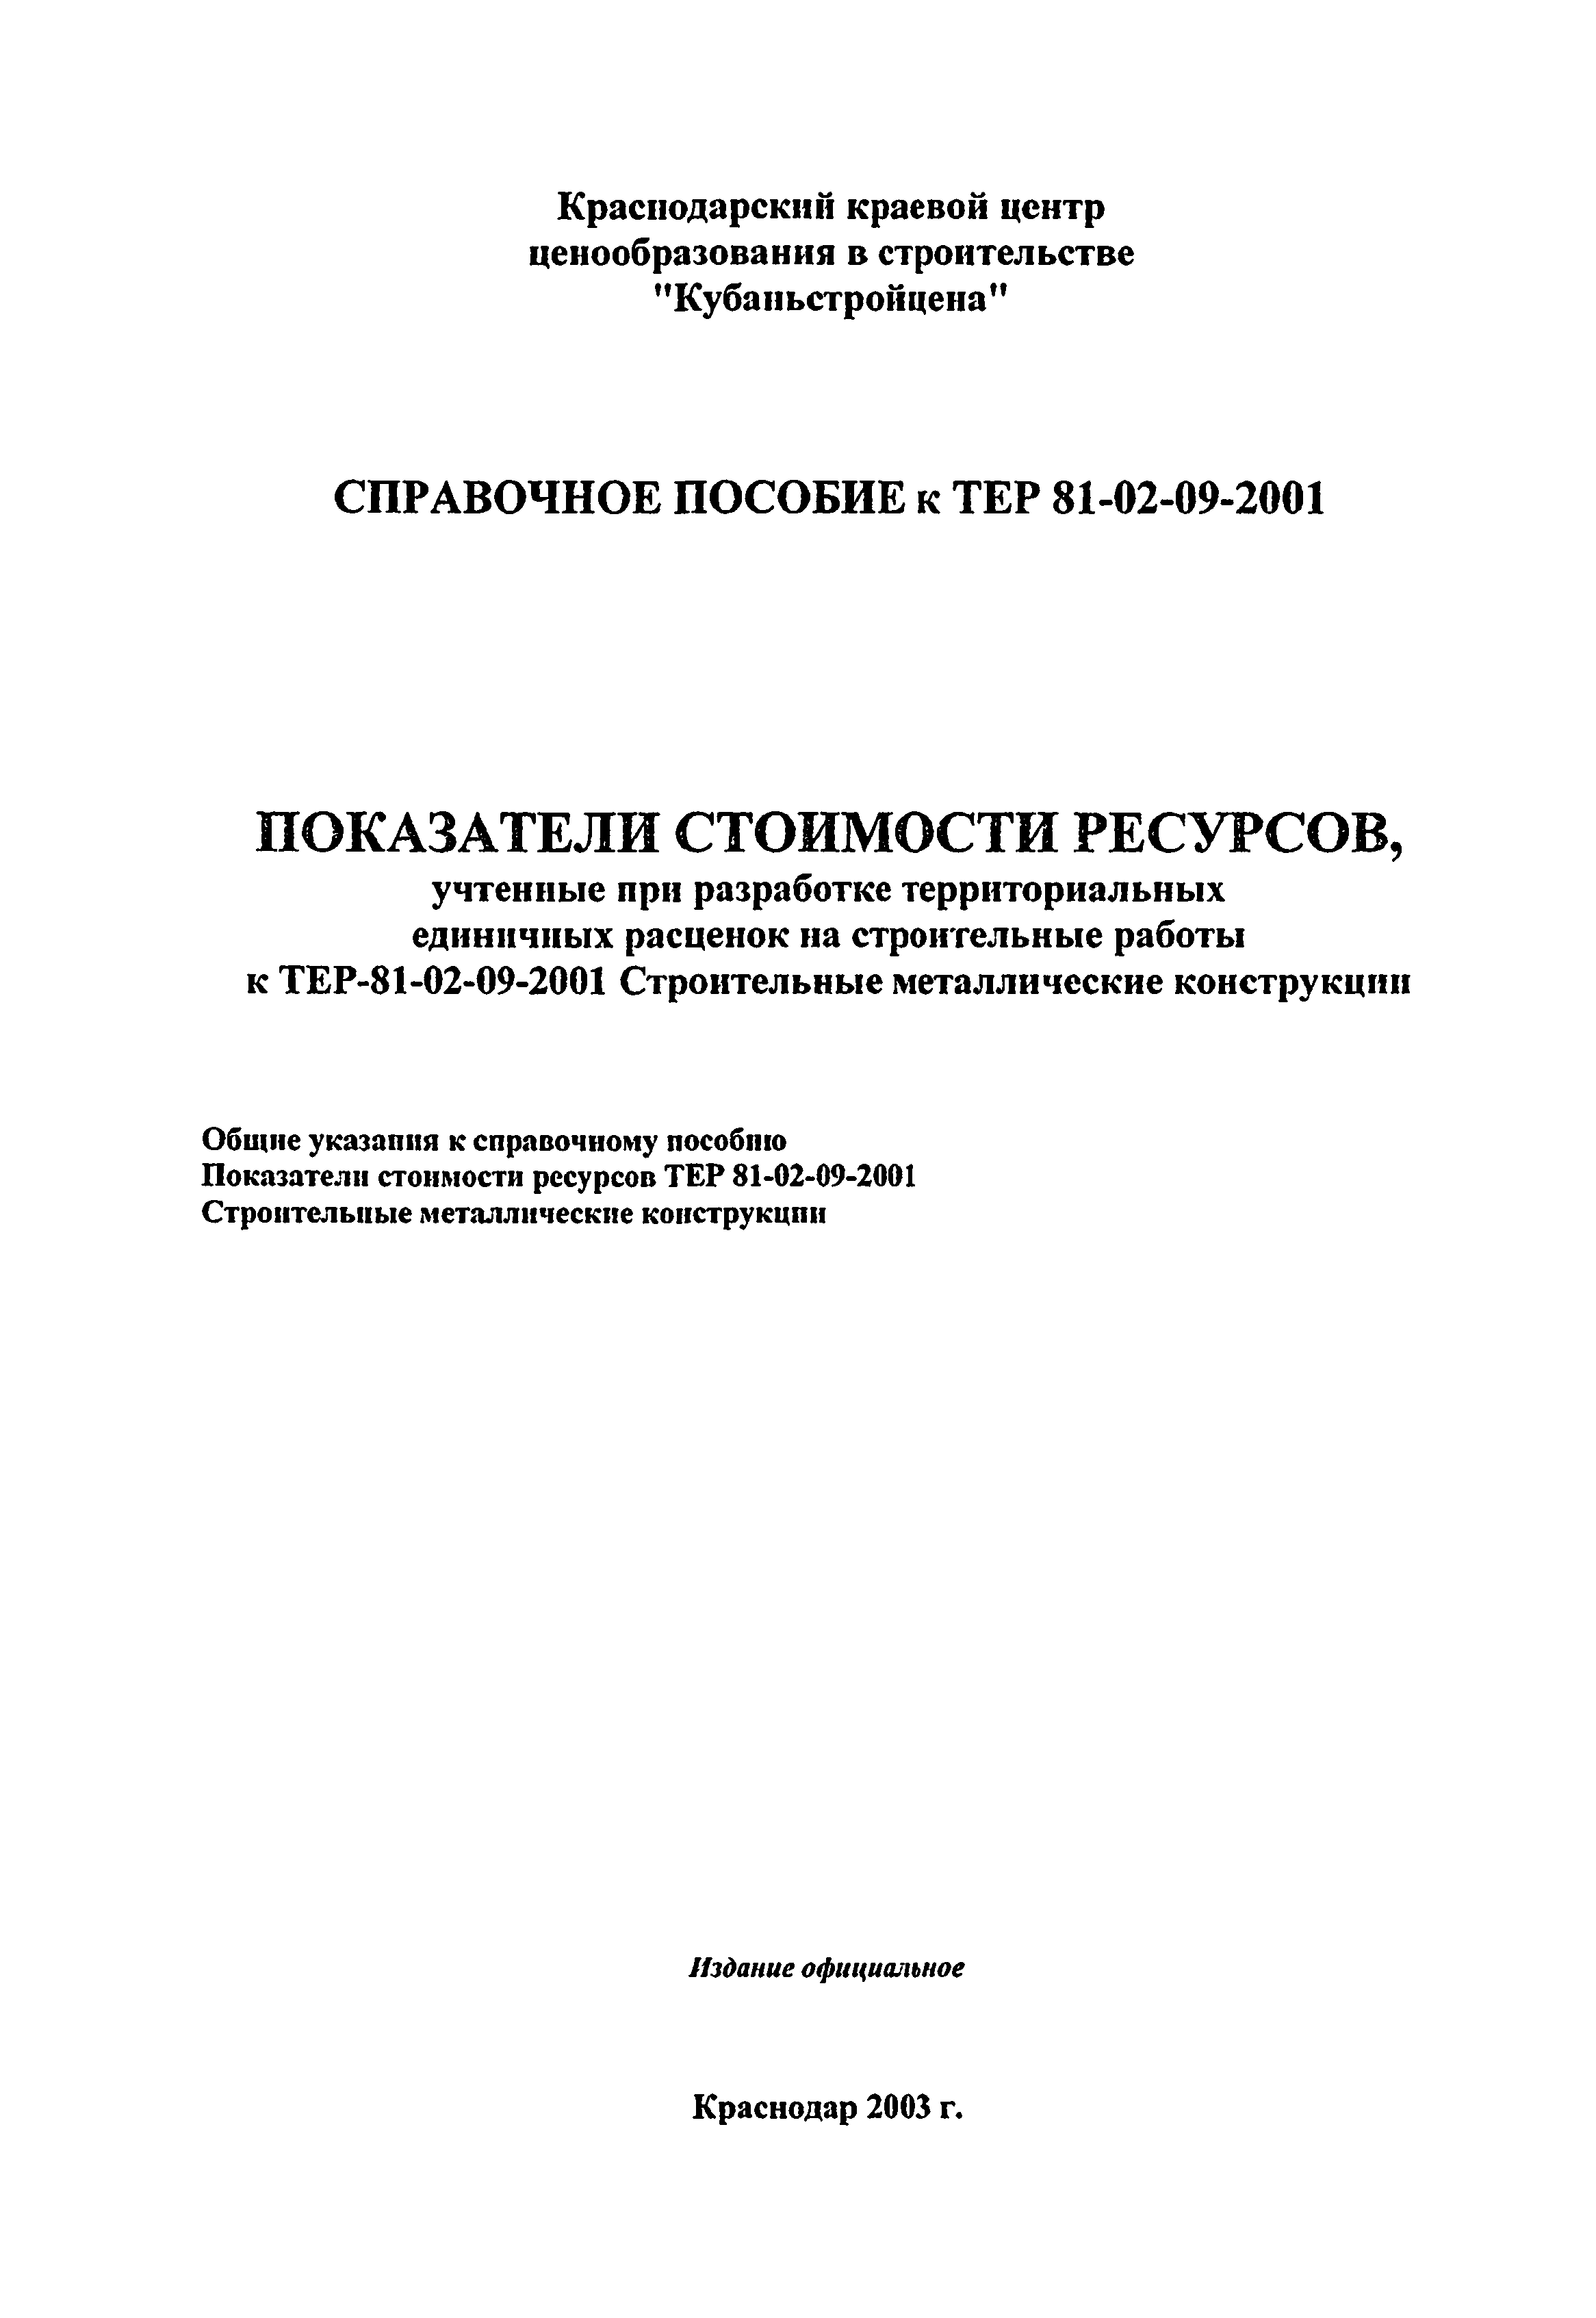 Справочное пособие к ТЕР 81-02-09-2001